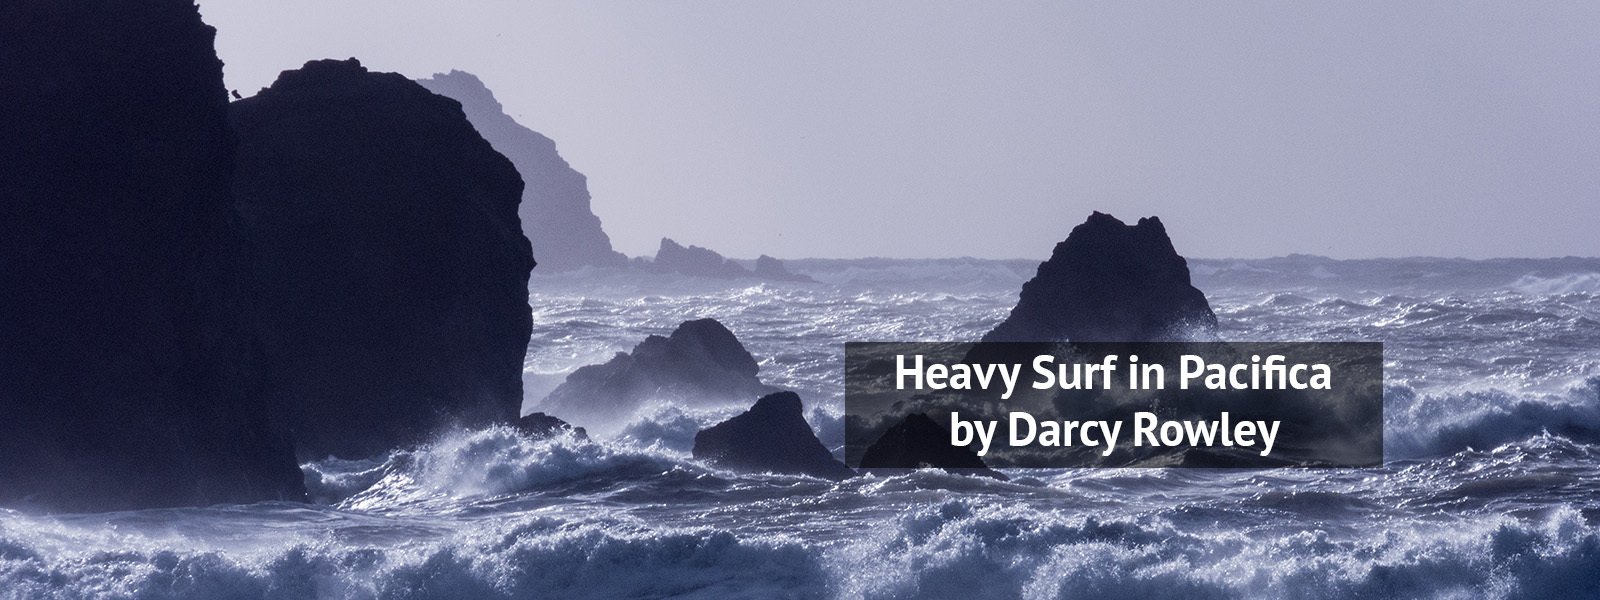 Darcy Rowley Captures Heavy Surf In Pacifica